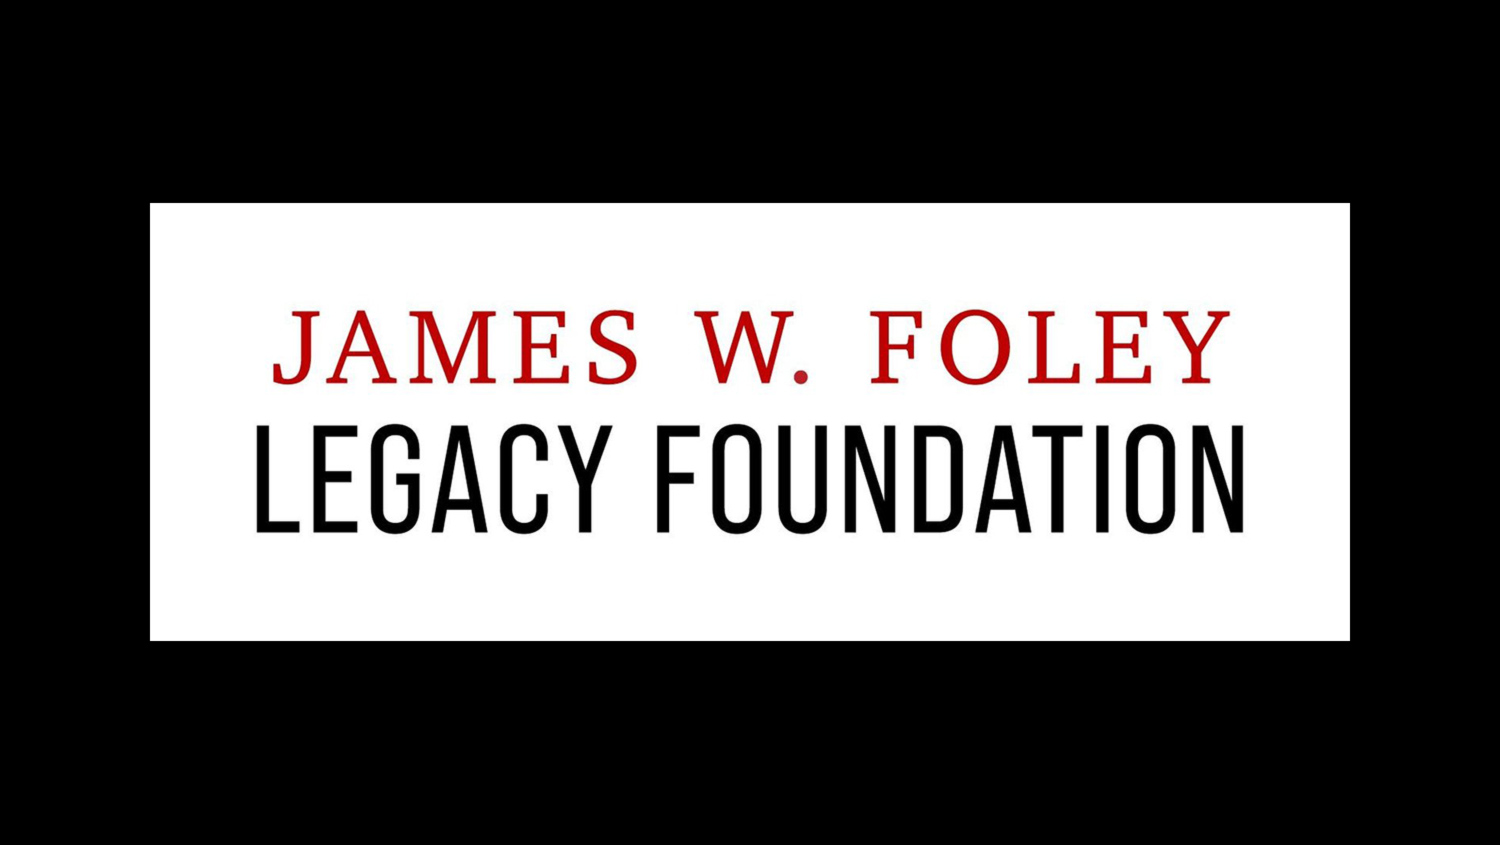 The James W. Foley Legacy Foundation Statement on the Kahramanmaras Earthquake